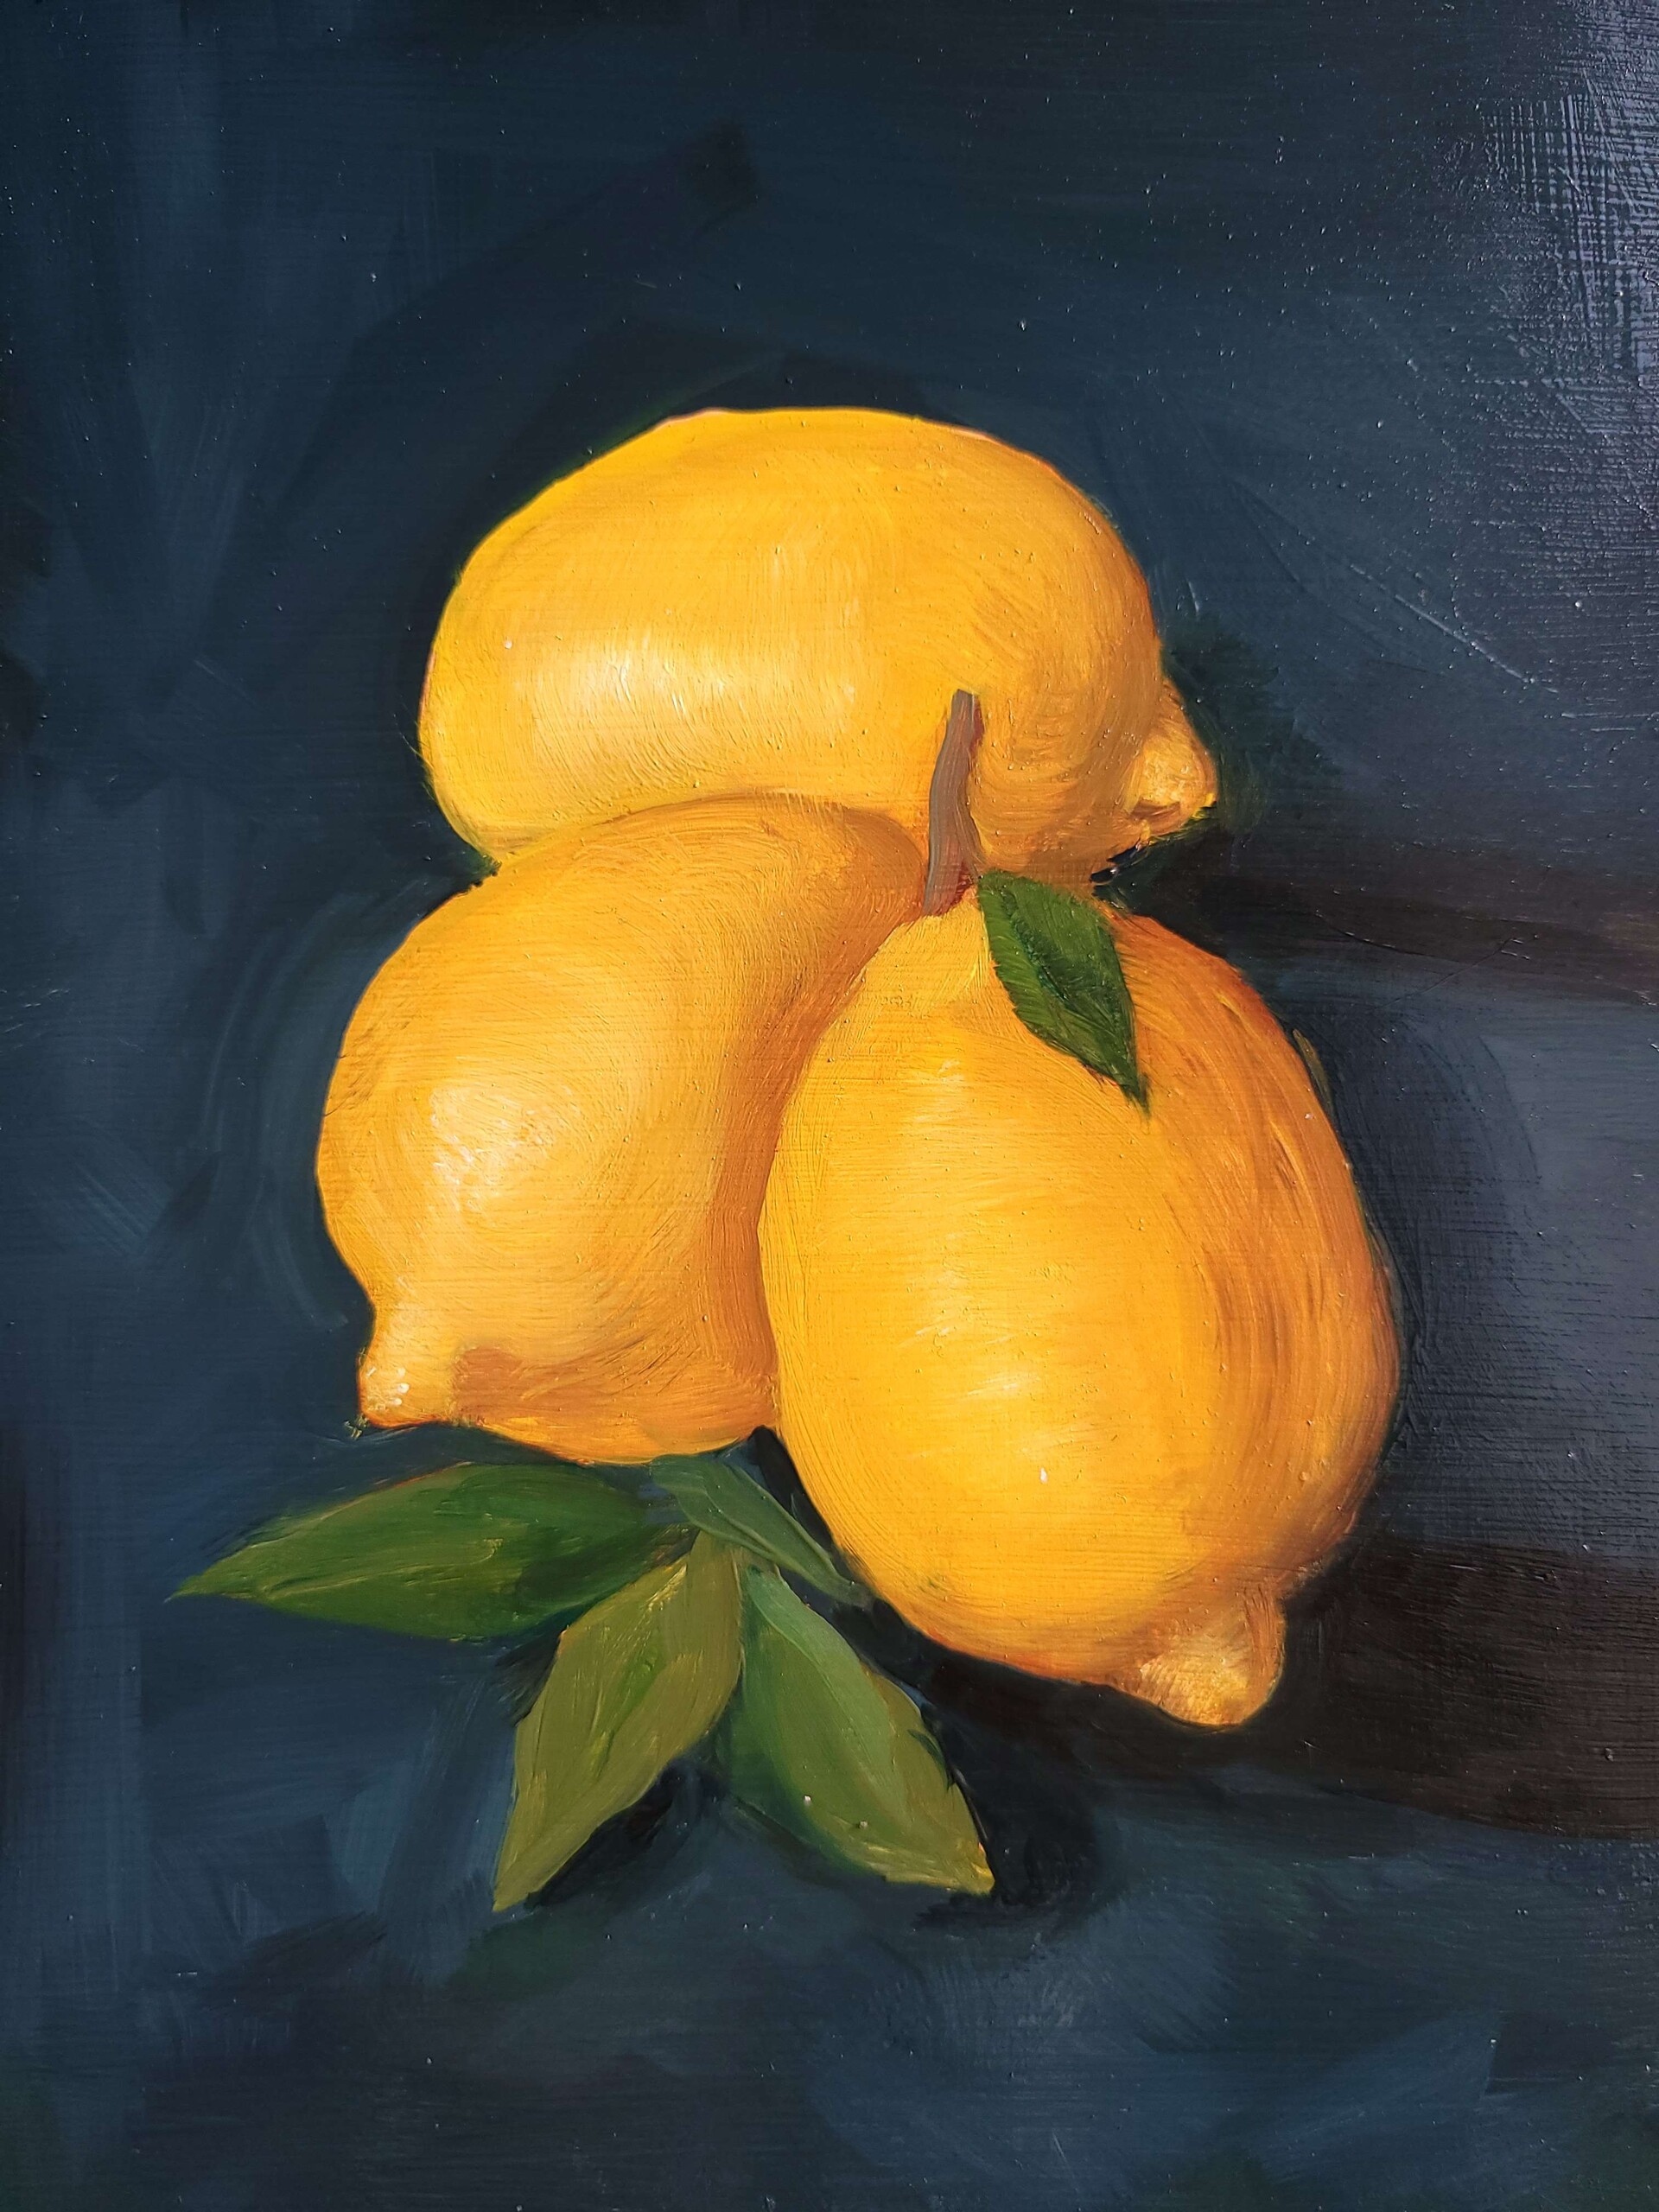 ArtStation - Lemon Study in Oil